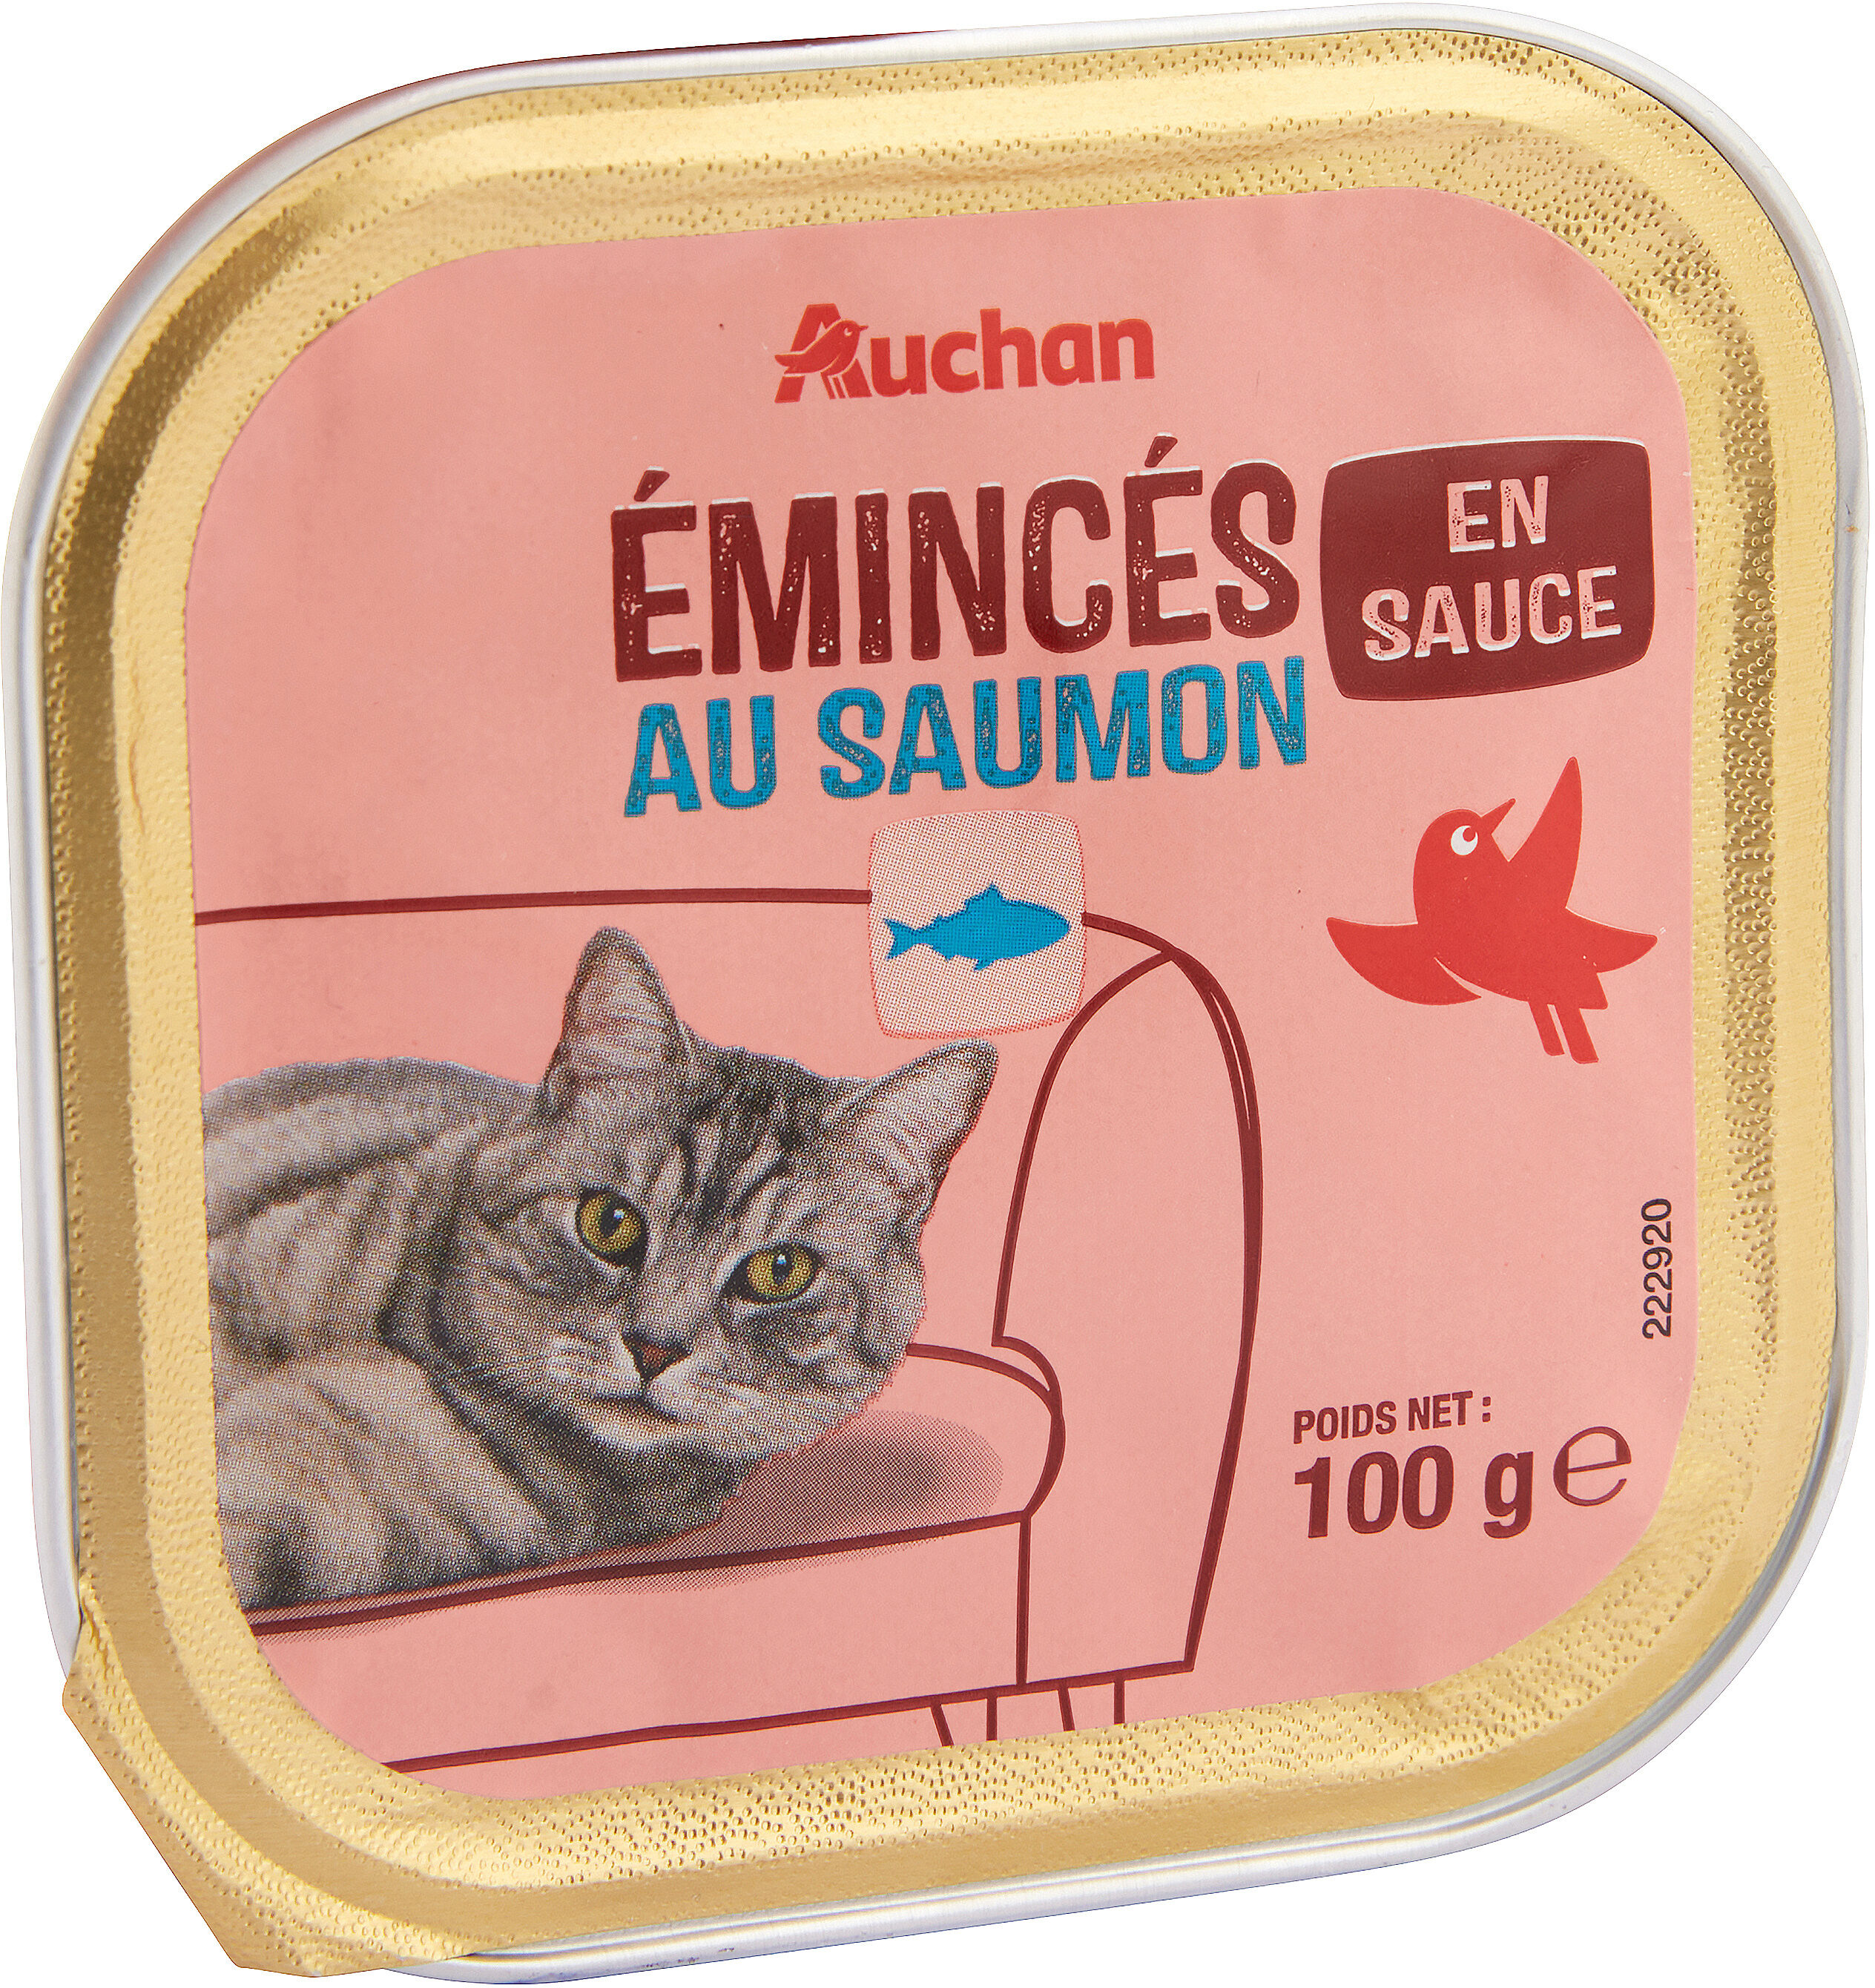 Émincés en sauce au saumon - Produit - fr